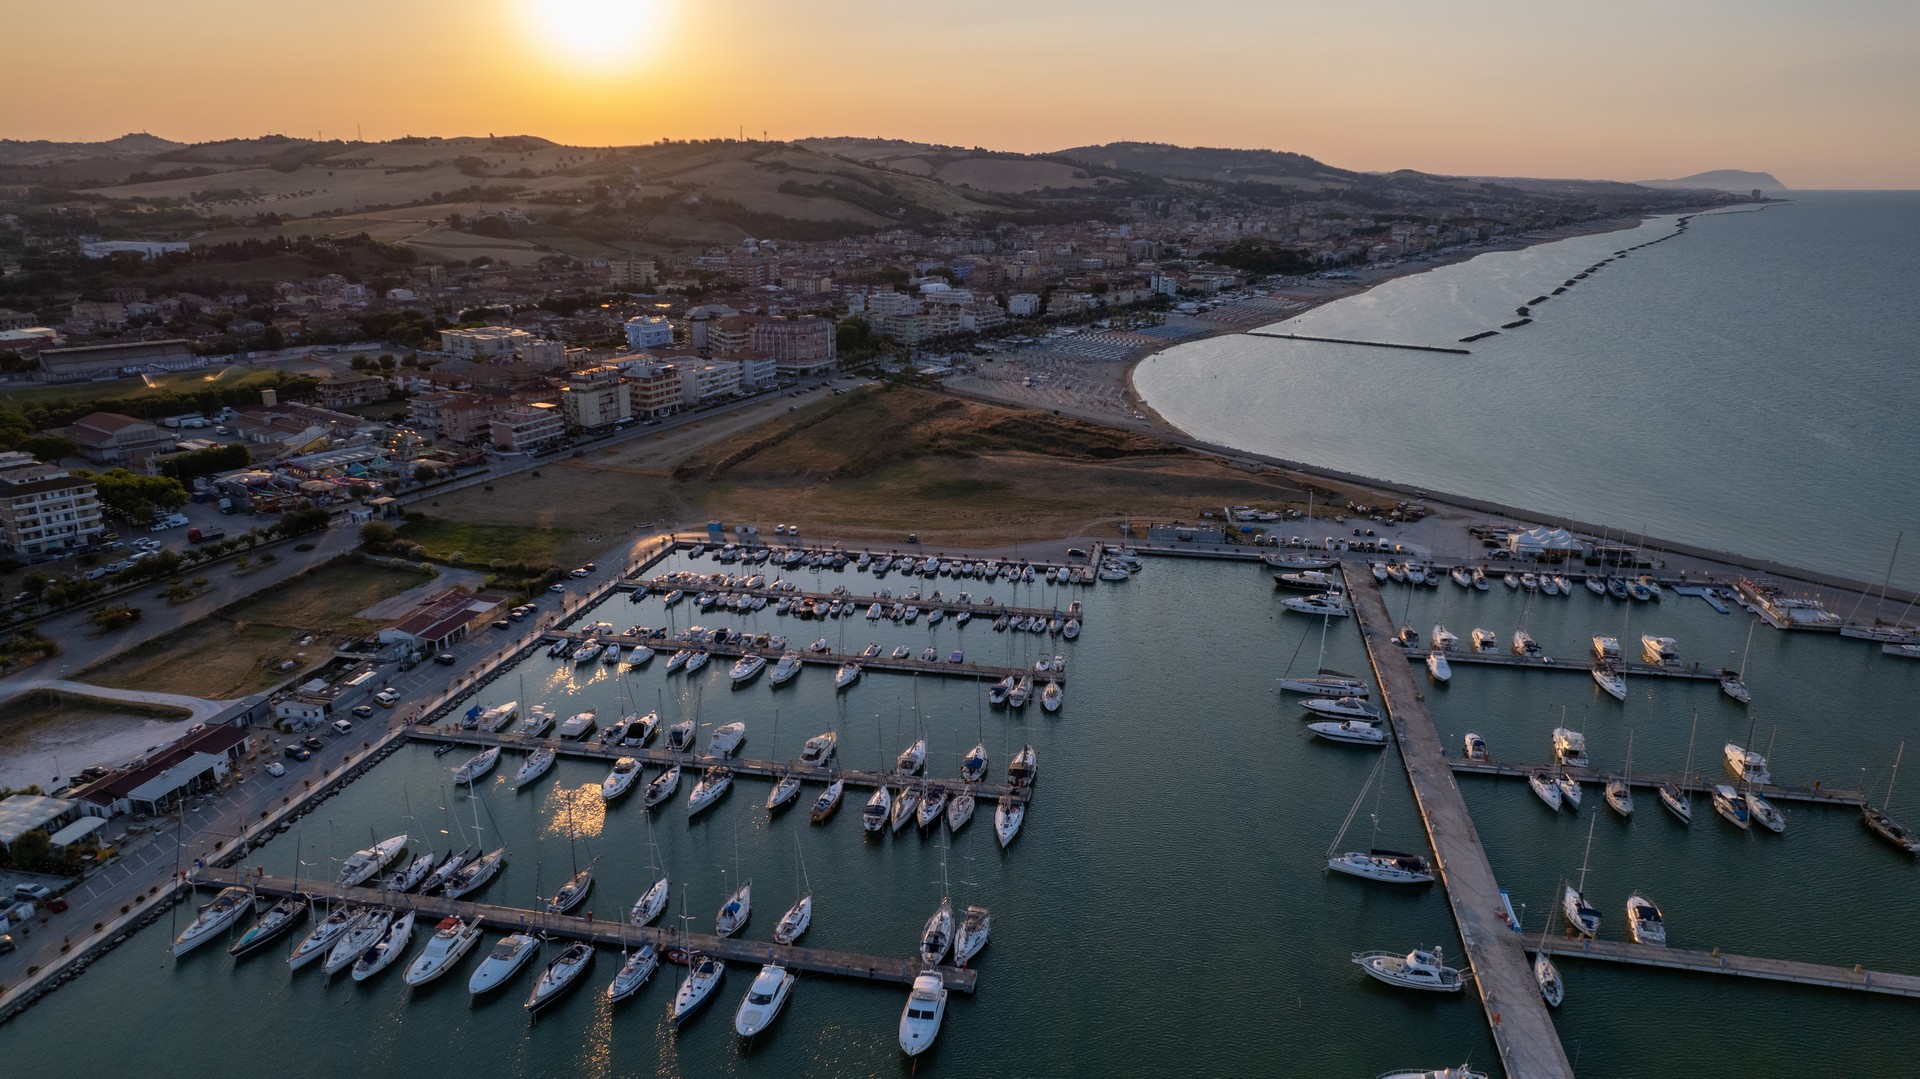 Marinedi allarga gli orizzonti con nuovi porti e servizi più solidi entro il 2026